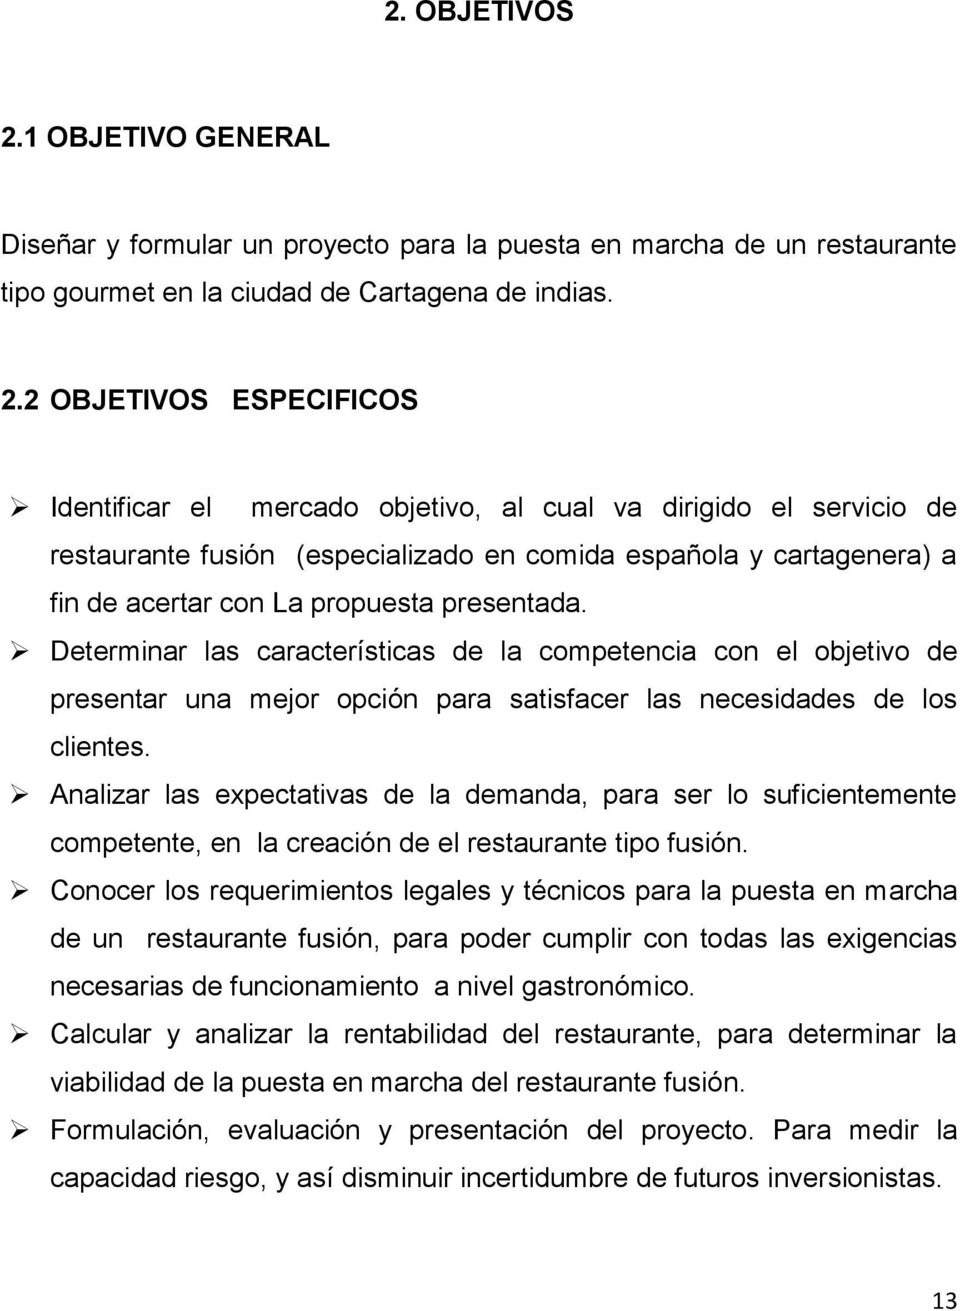 2 OBJETIVOS ESPECIFICOS Identificar el mercado objetivo, al cual va dirigido el servicio de restaurante fusión (especializado en comida española y cartagenera) a fin de acertar con La propuesta